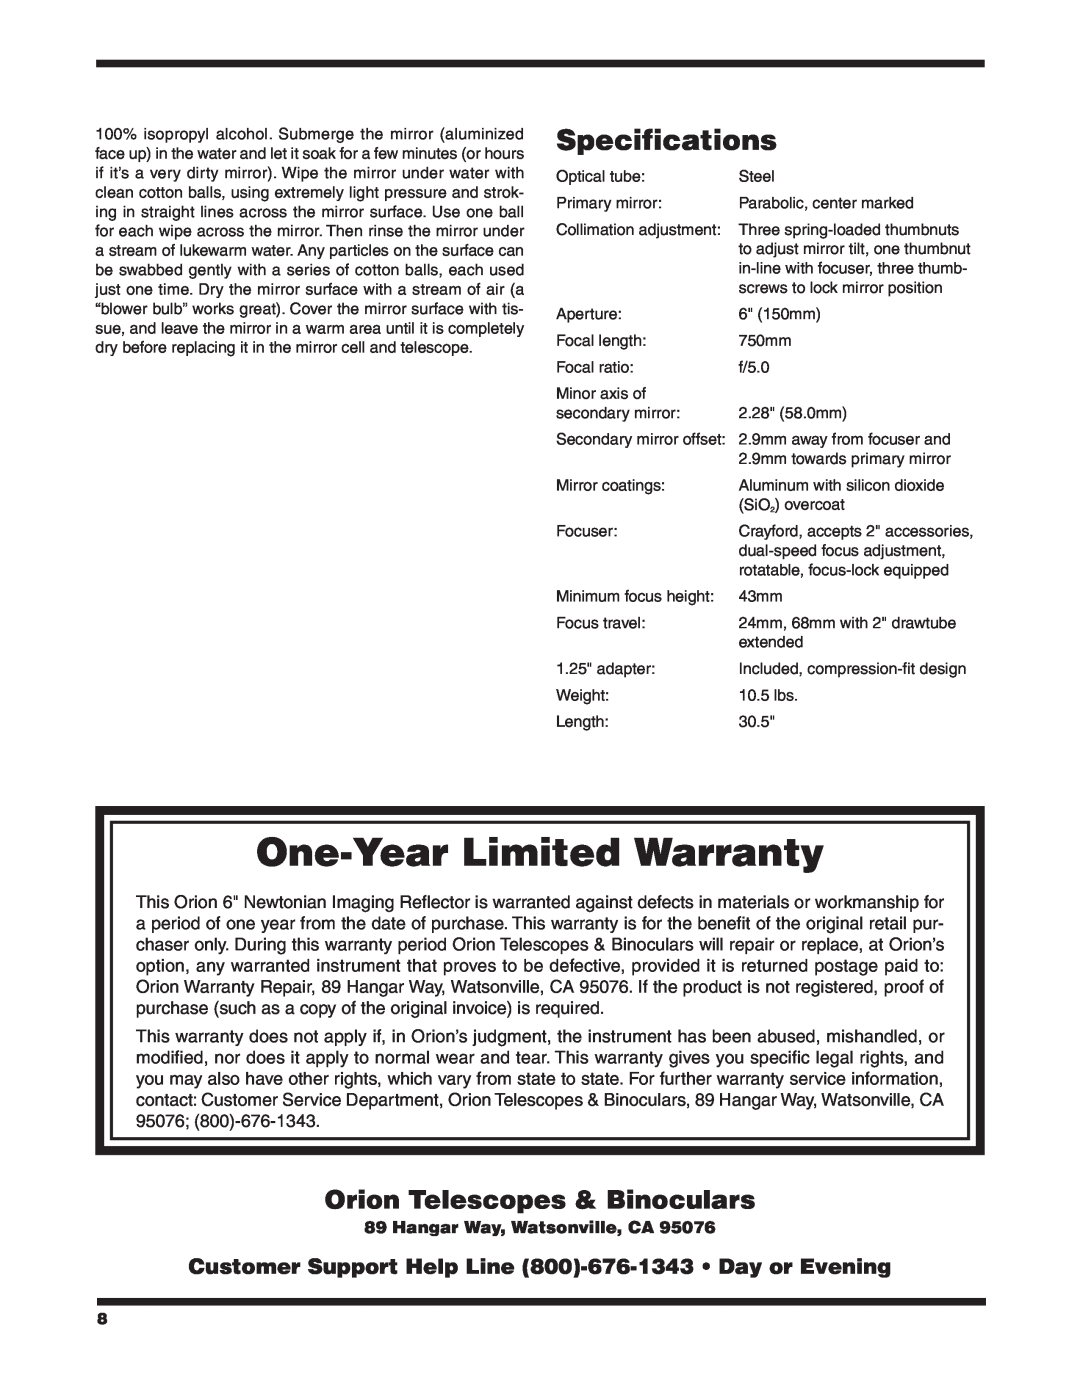 Orion 9786 Specifications, One-Year Limited Warranty, Orion Telescopes & Binoculars, Hangar Way, Watsonville, CA 